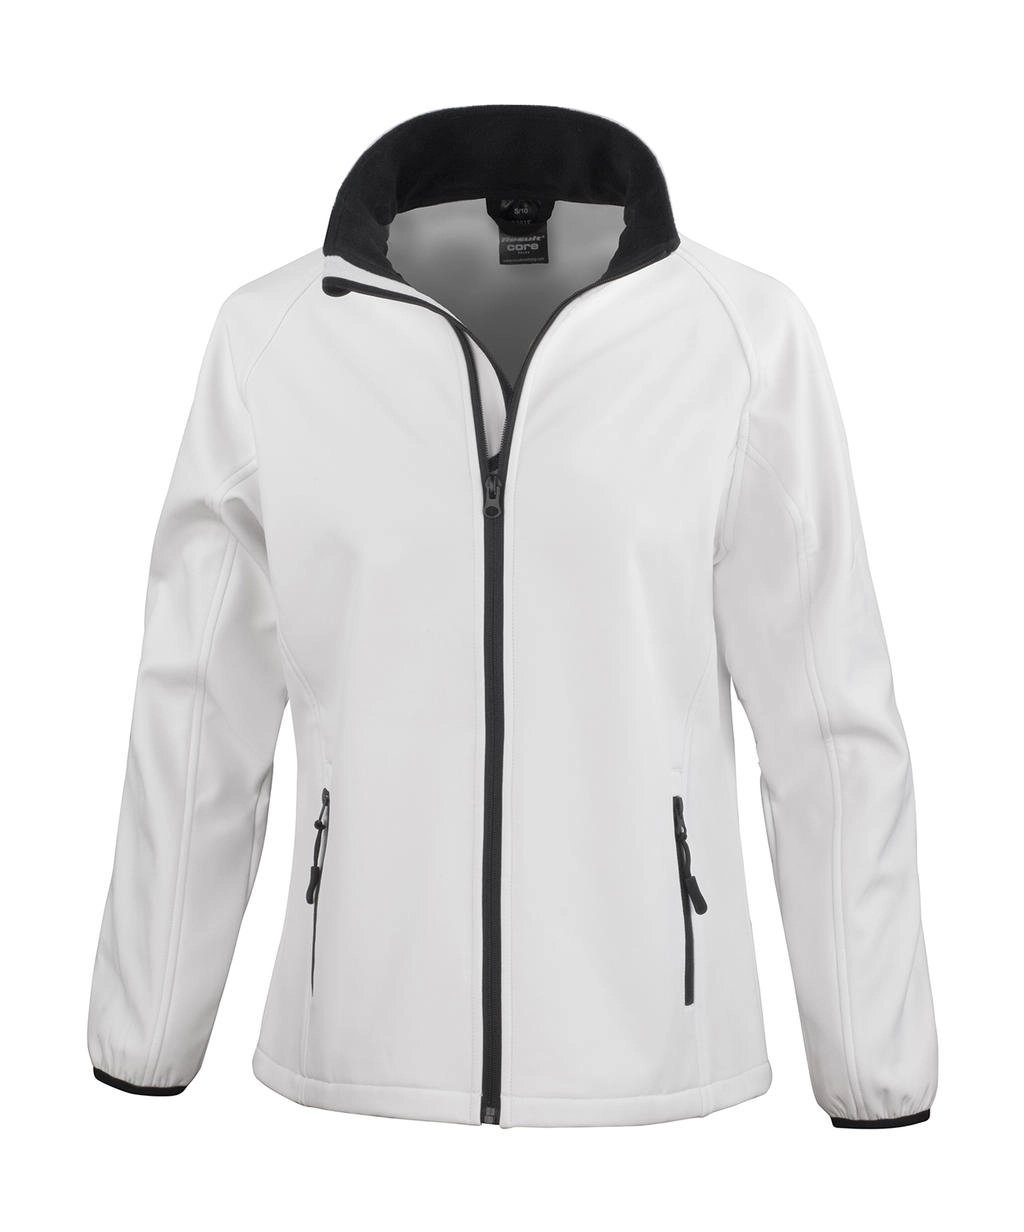 Ladies` Printable Softshell Jacket zum Besticken und Bedrucken in der Farbe White/Black mit Ihren Logo, Schriftzug oder Motiv.